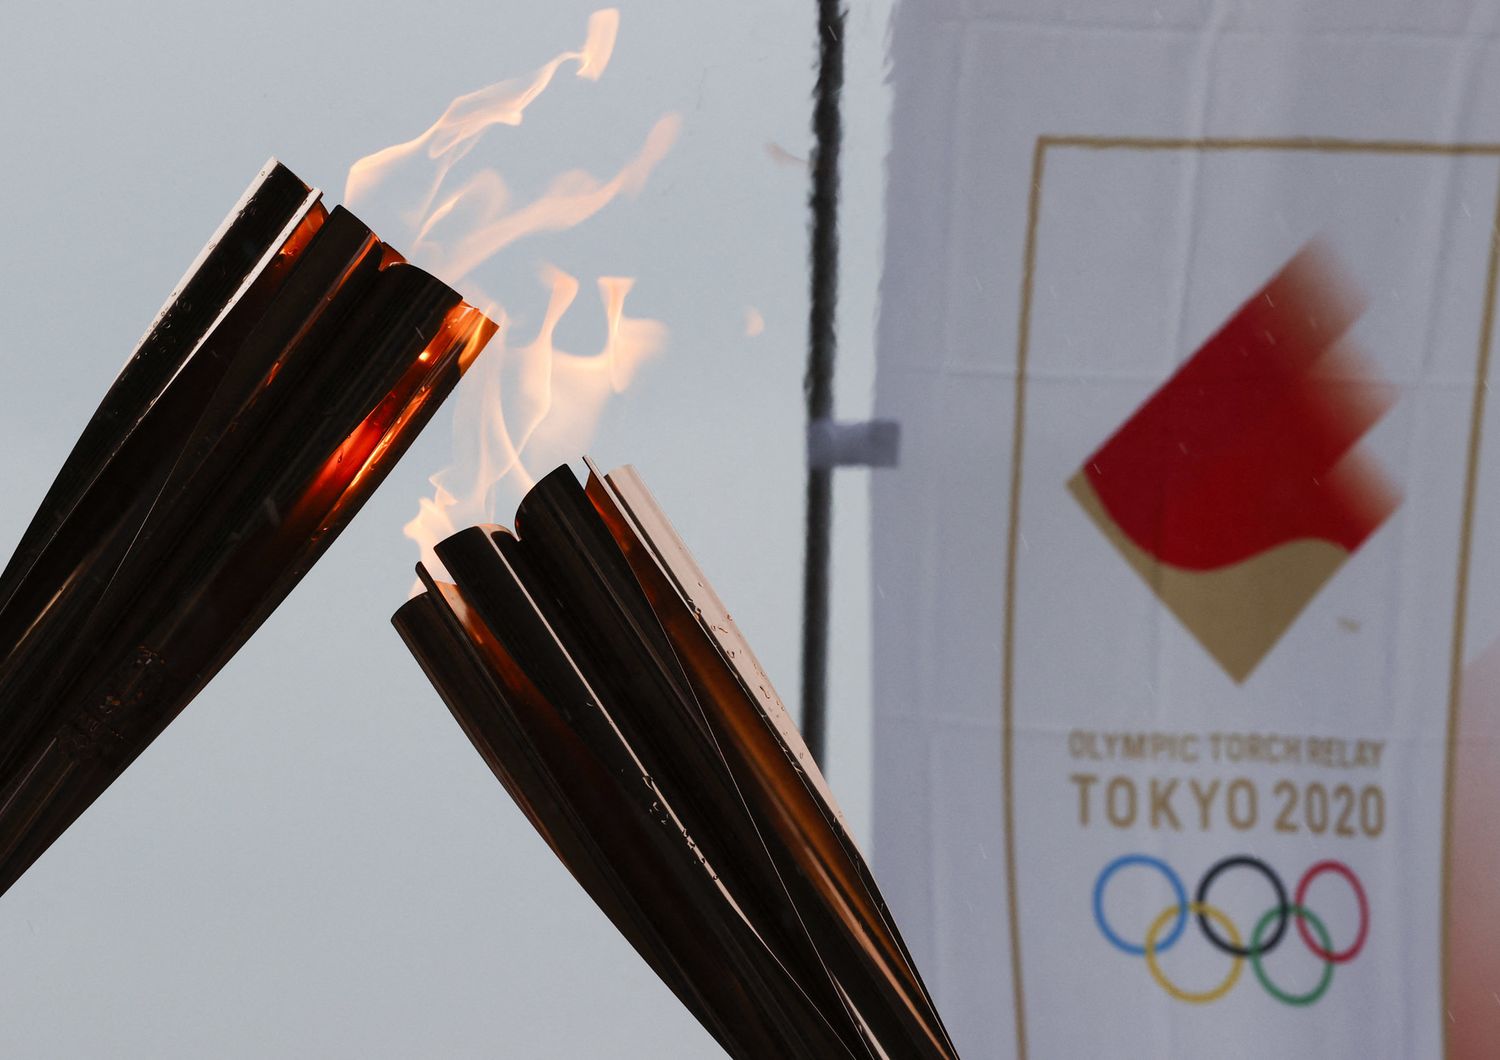 La fiaccola olimpica a Tokyo 2020